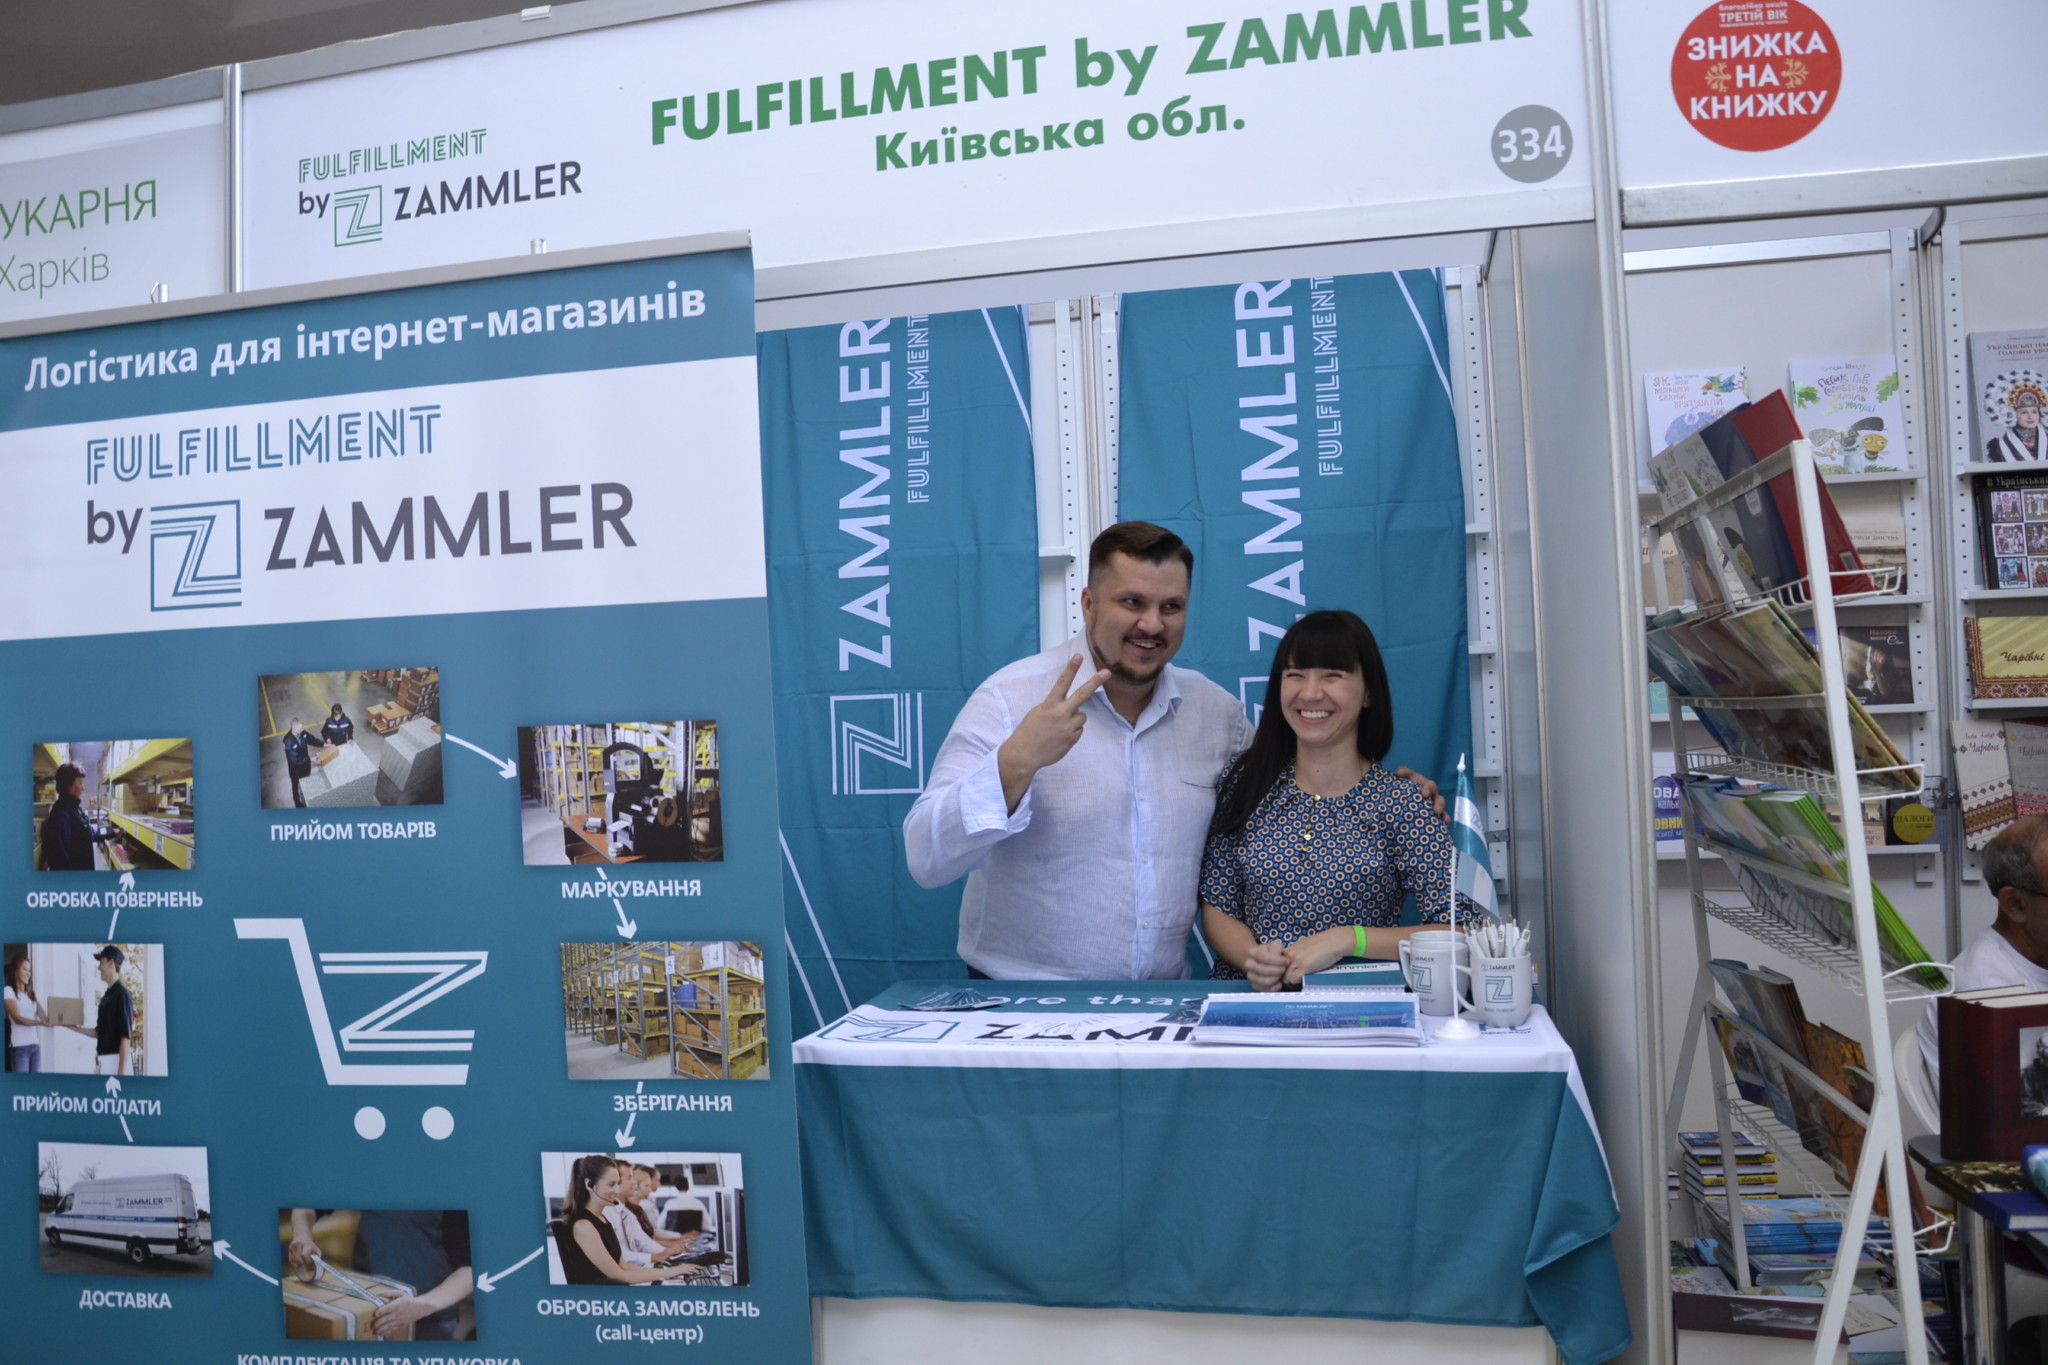 Логістична компанія ZAMMLER презентує на Форумі видавців сервіс FULFILLMENT by ZAMMLER